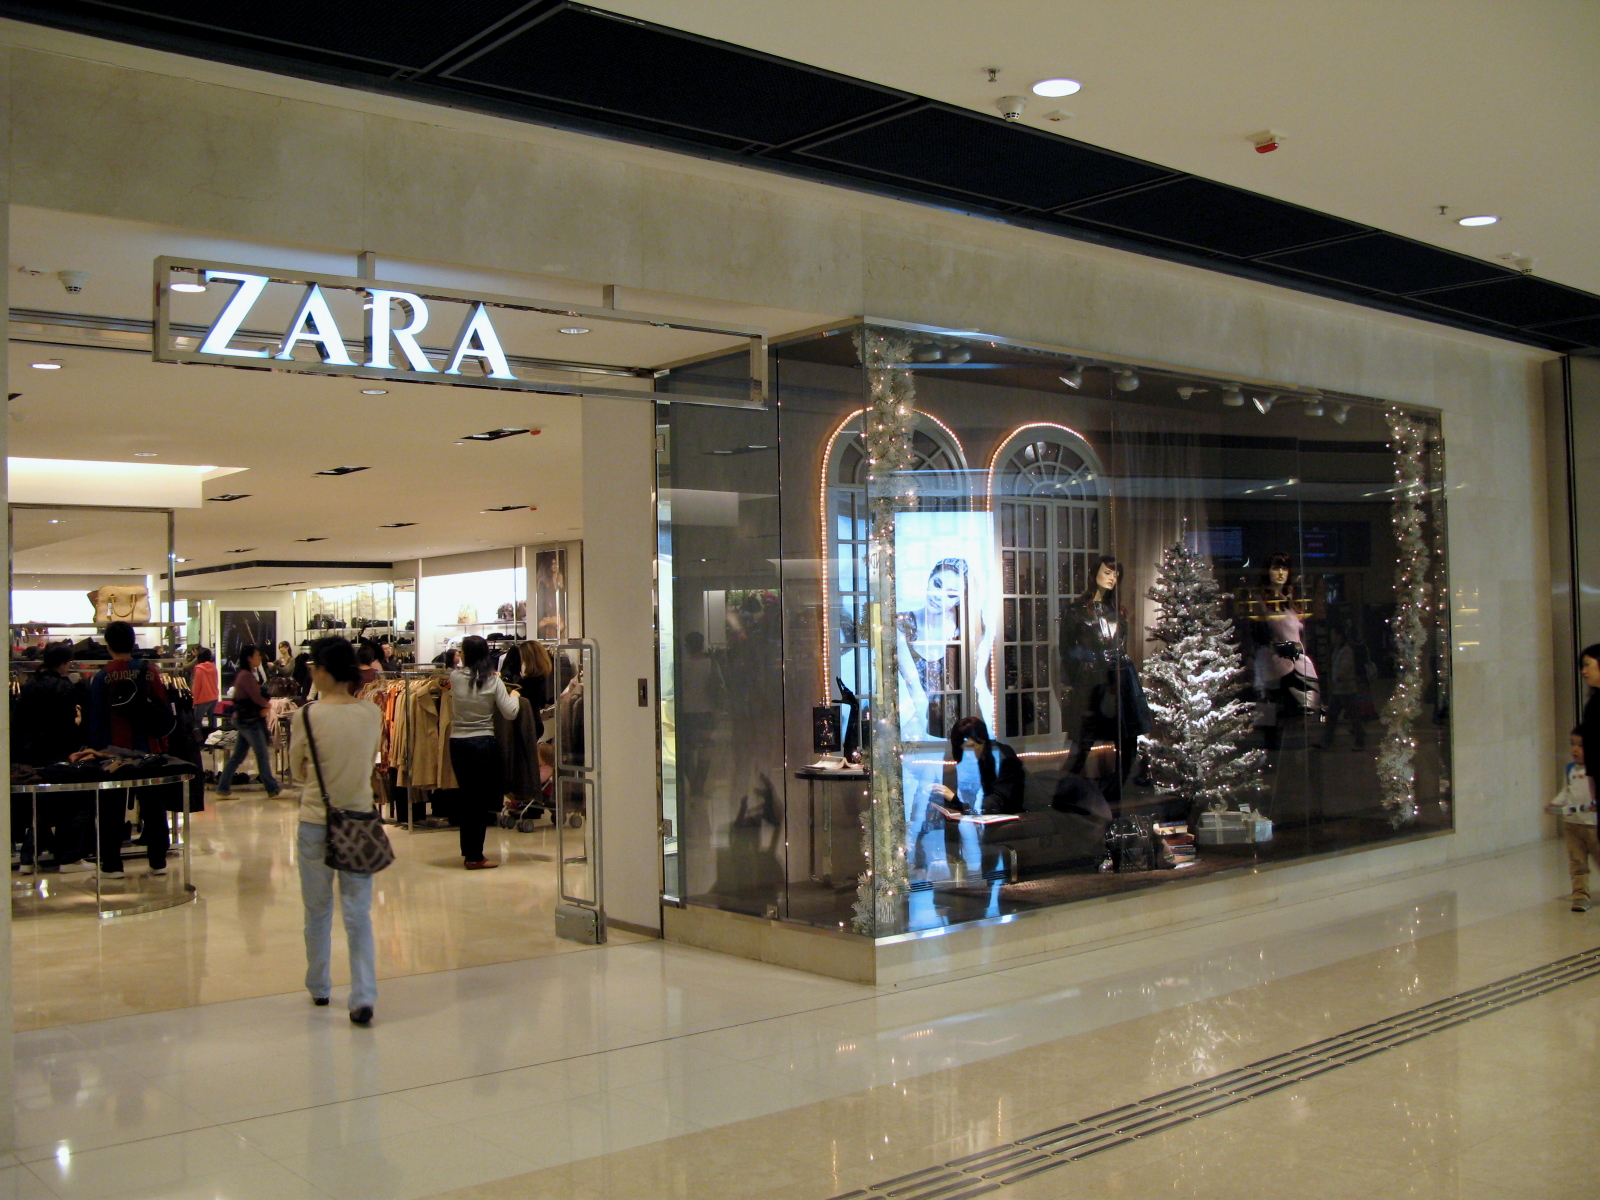 Zara ザラ コロナ閉店店舗日本はどこ いつまで 応援出来るかまとめてみました Trendview